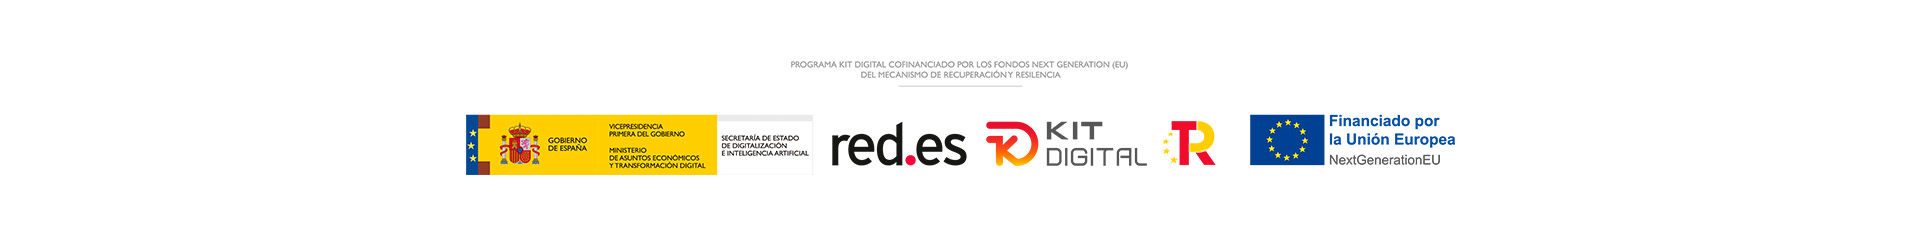 header_logos_kit_digital